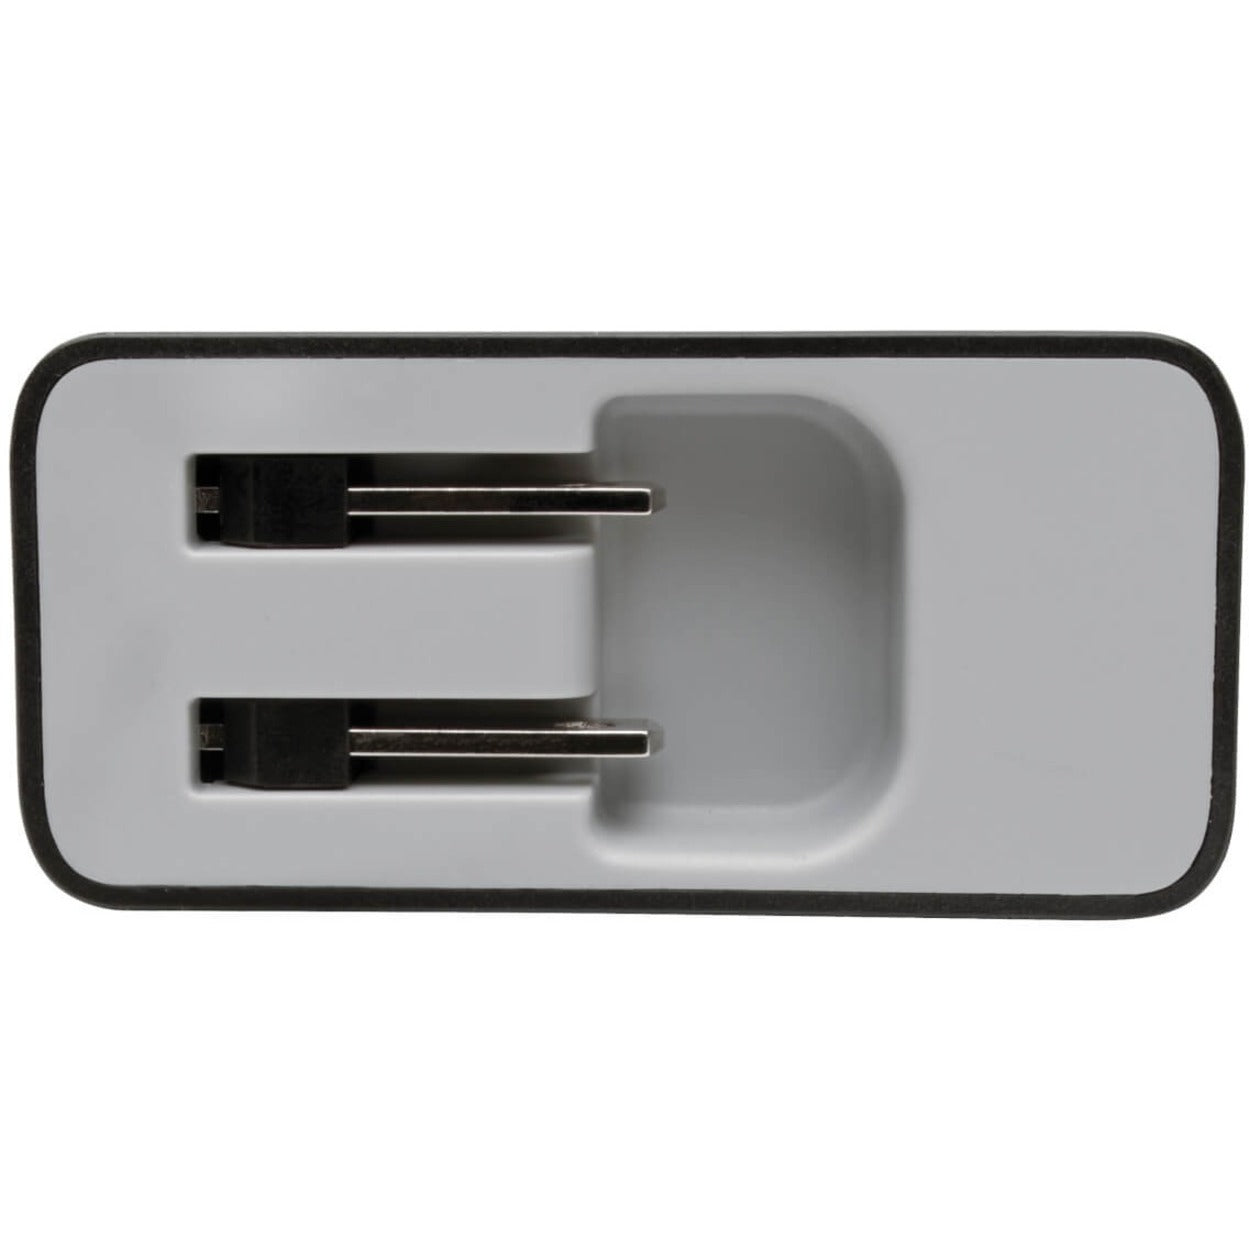 Tripp Lite Adaptador de CA U280-W02-A1C1 Cargador de pared con 2 puertos USB y USB tipo C Potencia de 51W Garantía de 2 años